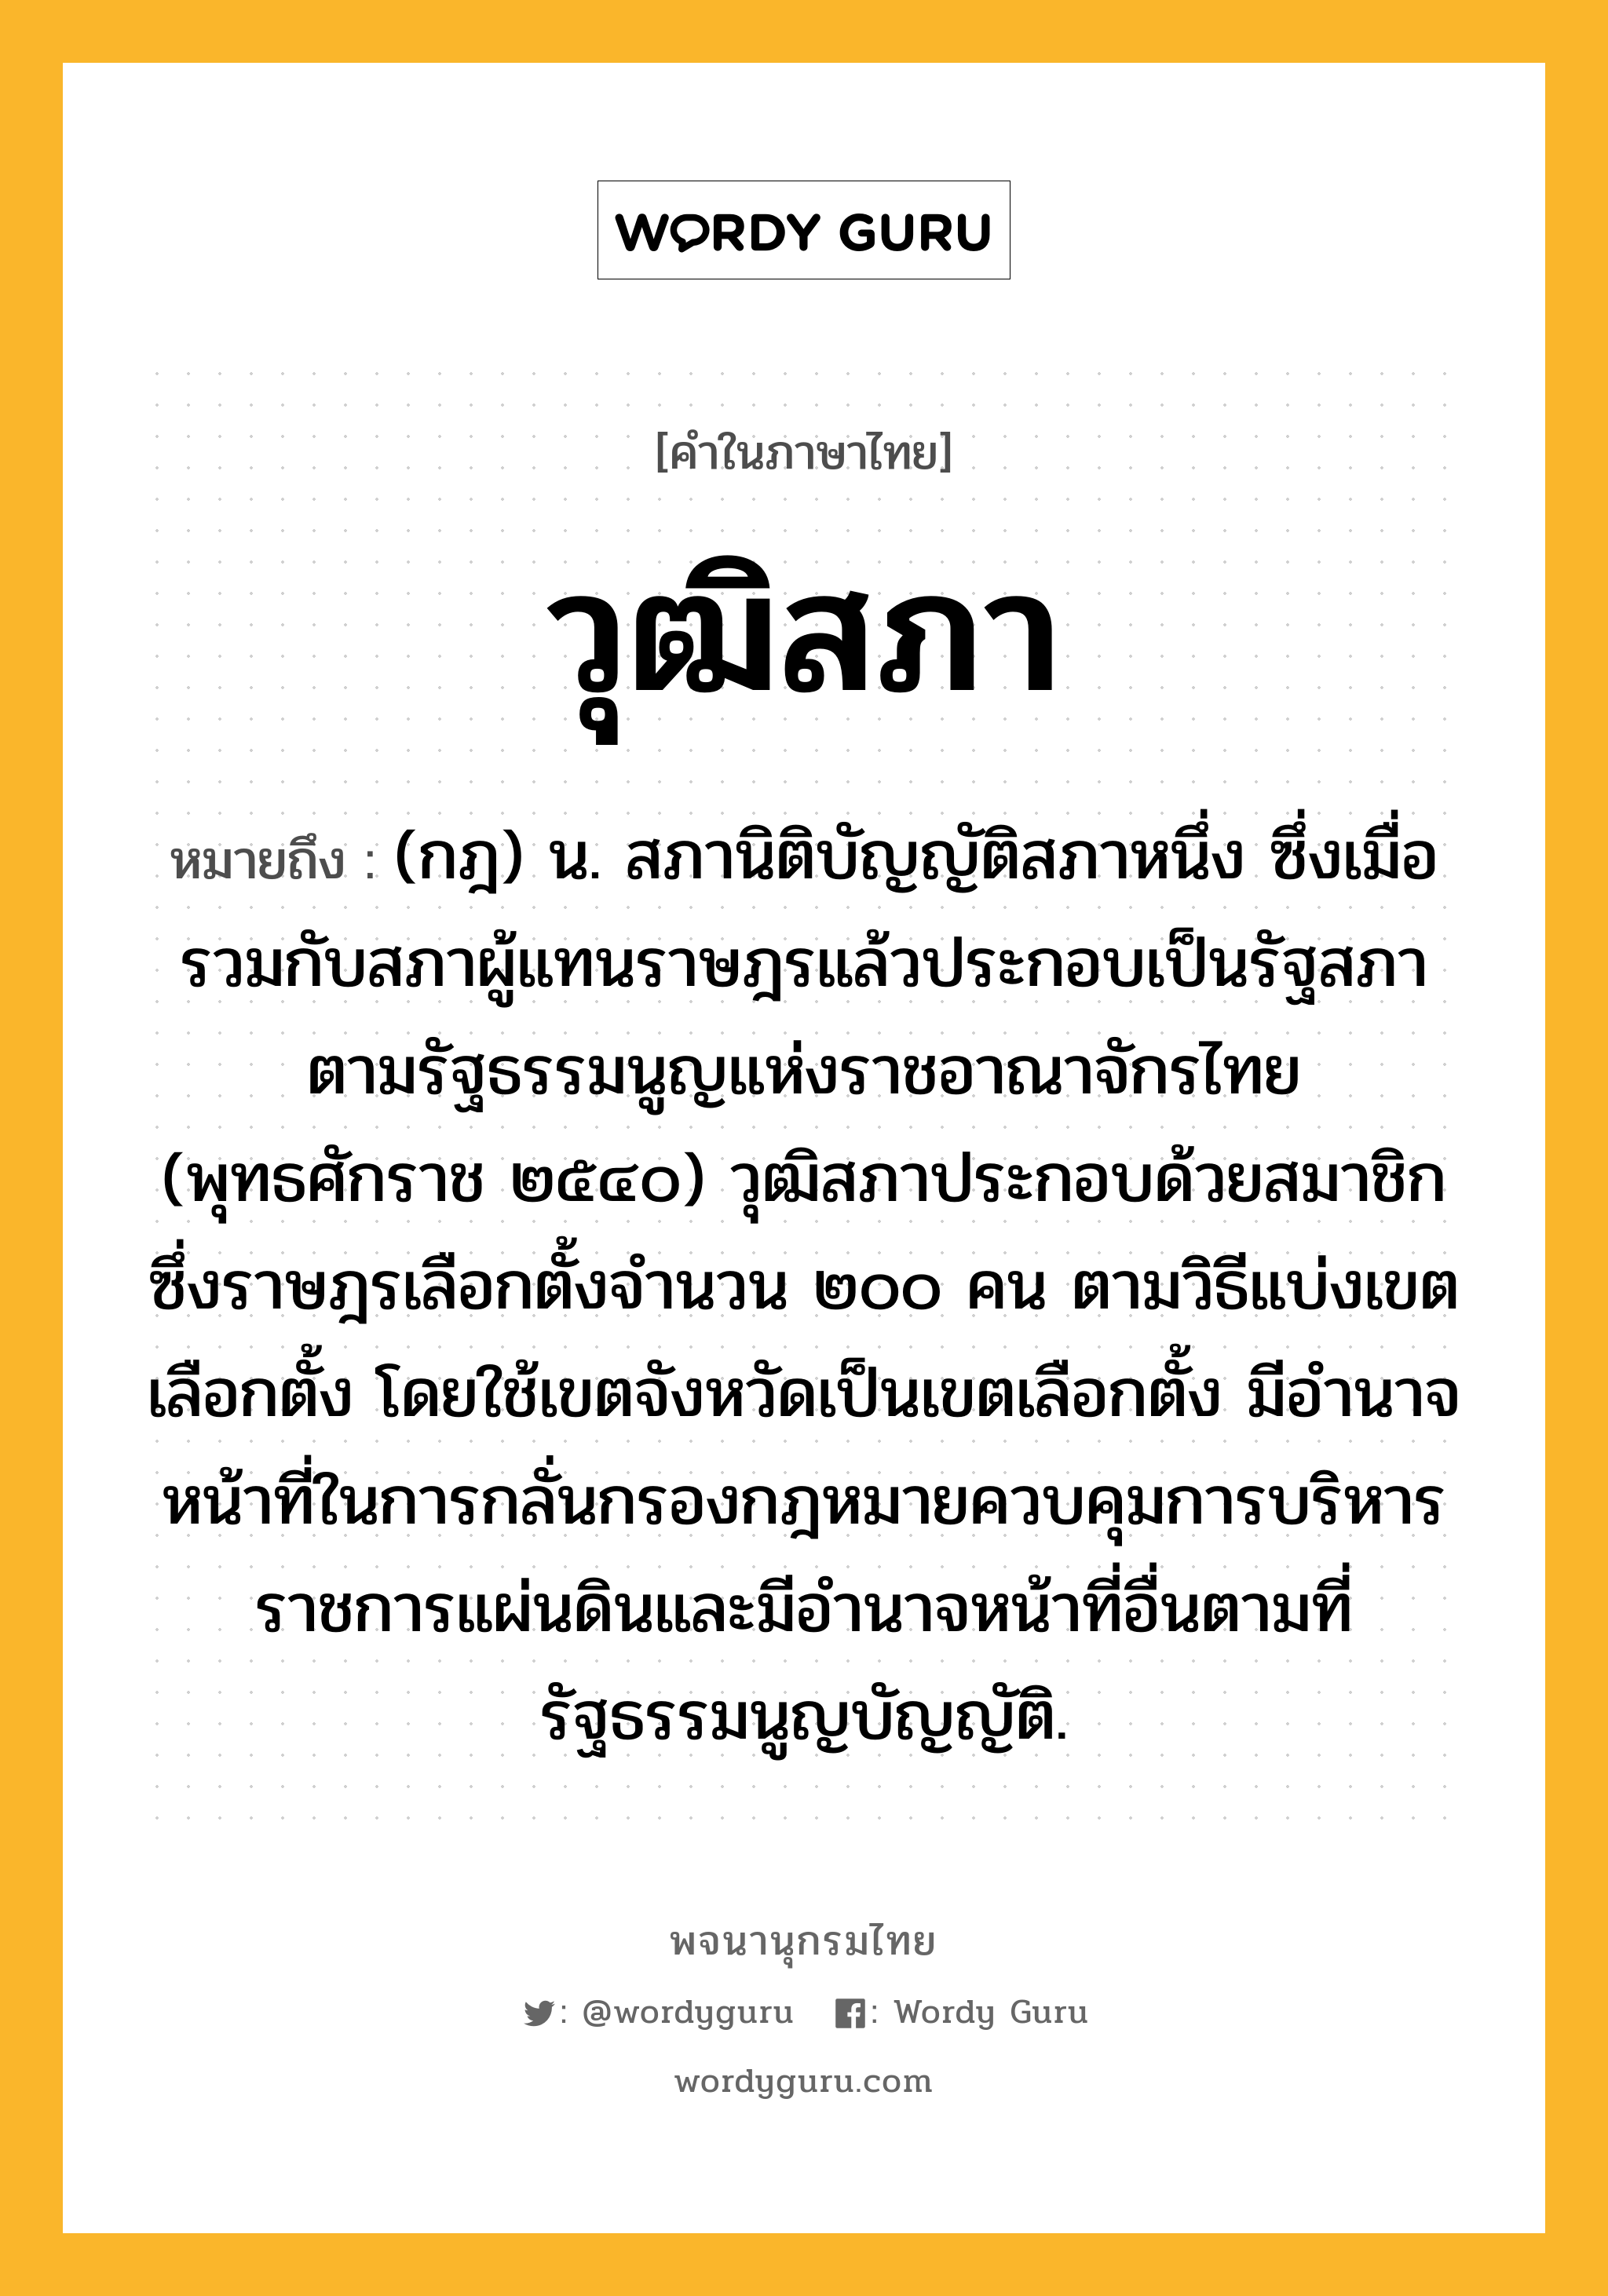 วุฒิสภา ความหมาย หมายถึงอะไร?, คำในภาษาไทย วุฒิสภา หมายถึง (กฎ) น. สภานิติบัญญัติสภาหนึ่ง ซึ่งเมื่อรวมกับสภาผู้แทนราษฎรแล้วประกอบเป็นรัฐสภา ตามรัฐธรรมนูญแห่งราชอาณาจักรไทย (พุทธศักราช ๒๕๔๐) วุฒิสภาประกอบด้วยสมาชิกซึ่งราษฎรเลือกตั้งจำนวน ๒๐๐ คน ตามวิธีแบ่งเขตเลือกตั้ง โดยใช้เขตจังหวัดเป็นเขตเลือกตั้ง มีอำนาจหน้าที่ในการกลั่นกรองกฎหมายควบคุมการบริหารราชการแผ่นดินและมีอำนาจหน้าที่อื่นตามที่รัฐธรรมนูญบัญญัติ.